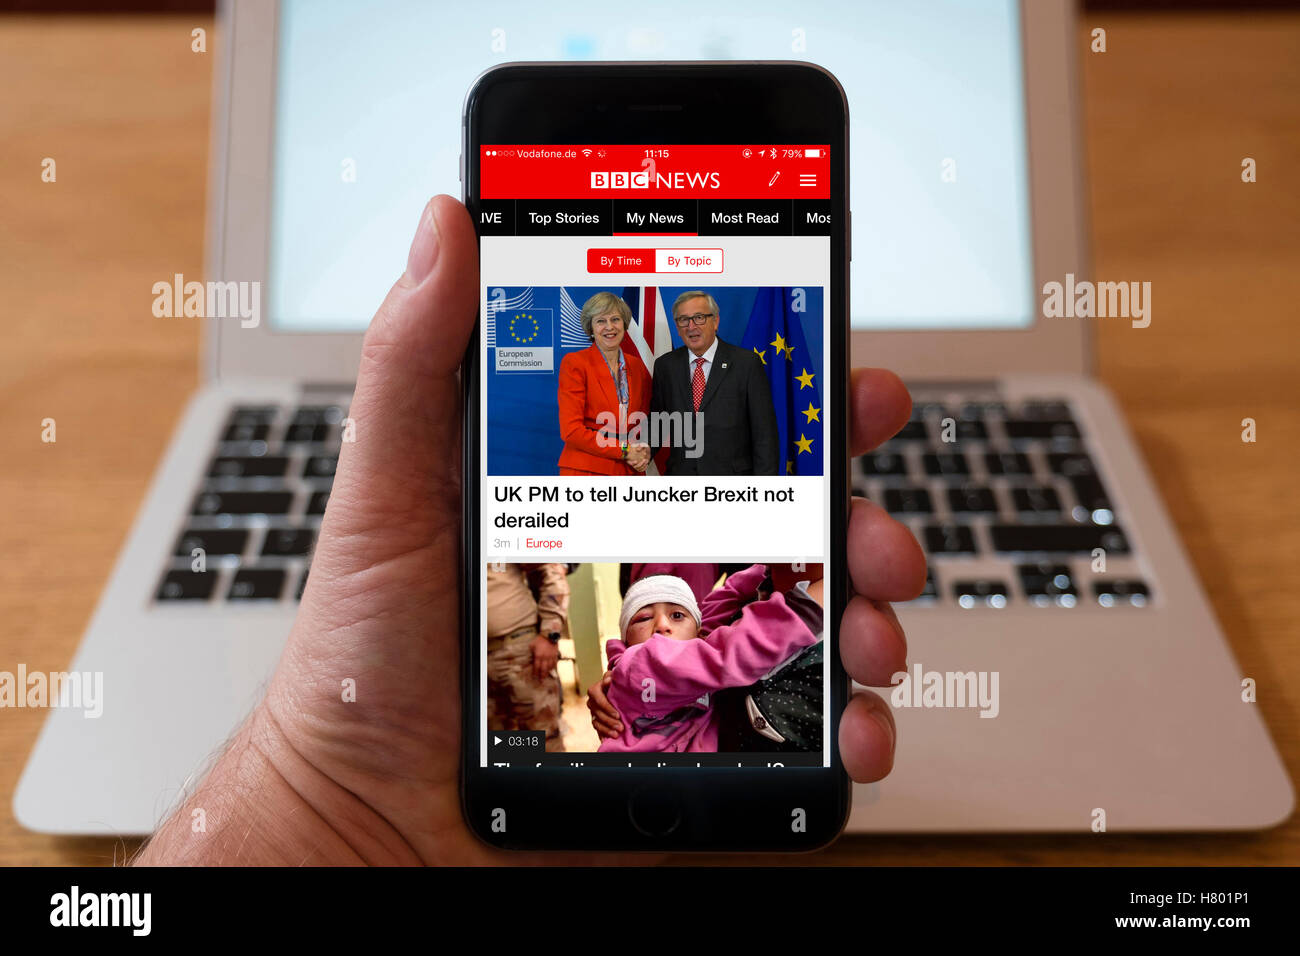 Utilizzo di iPhone smartphone per visualizzare le notizie di BBC in primo piano sulla pagina iniziale Foto Stock